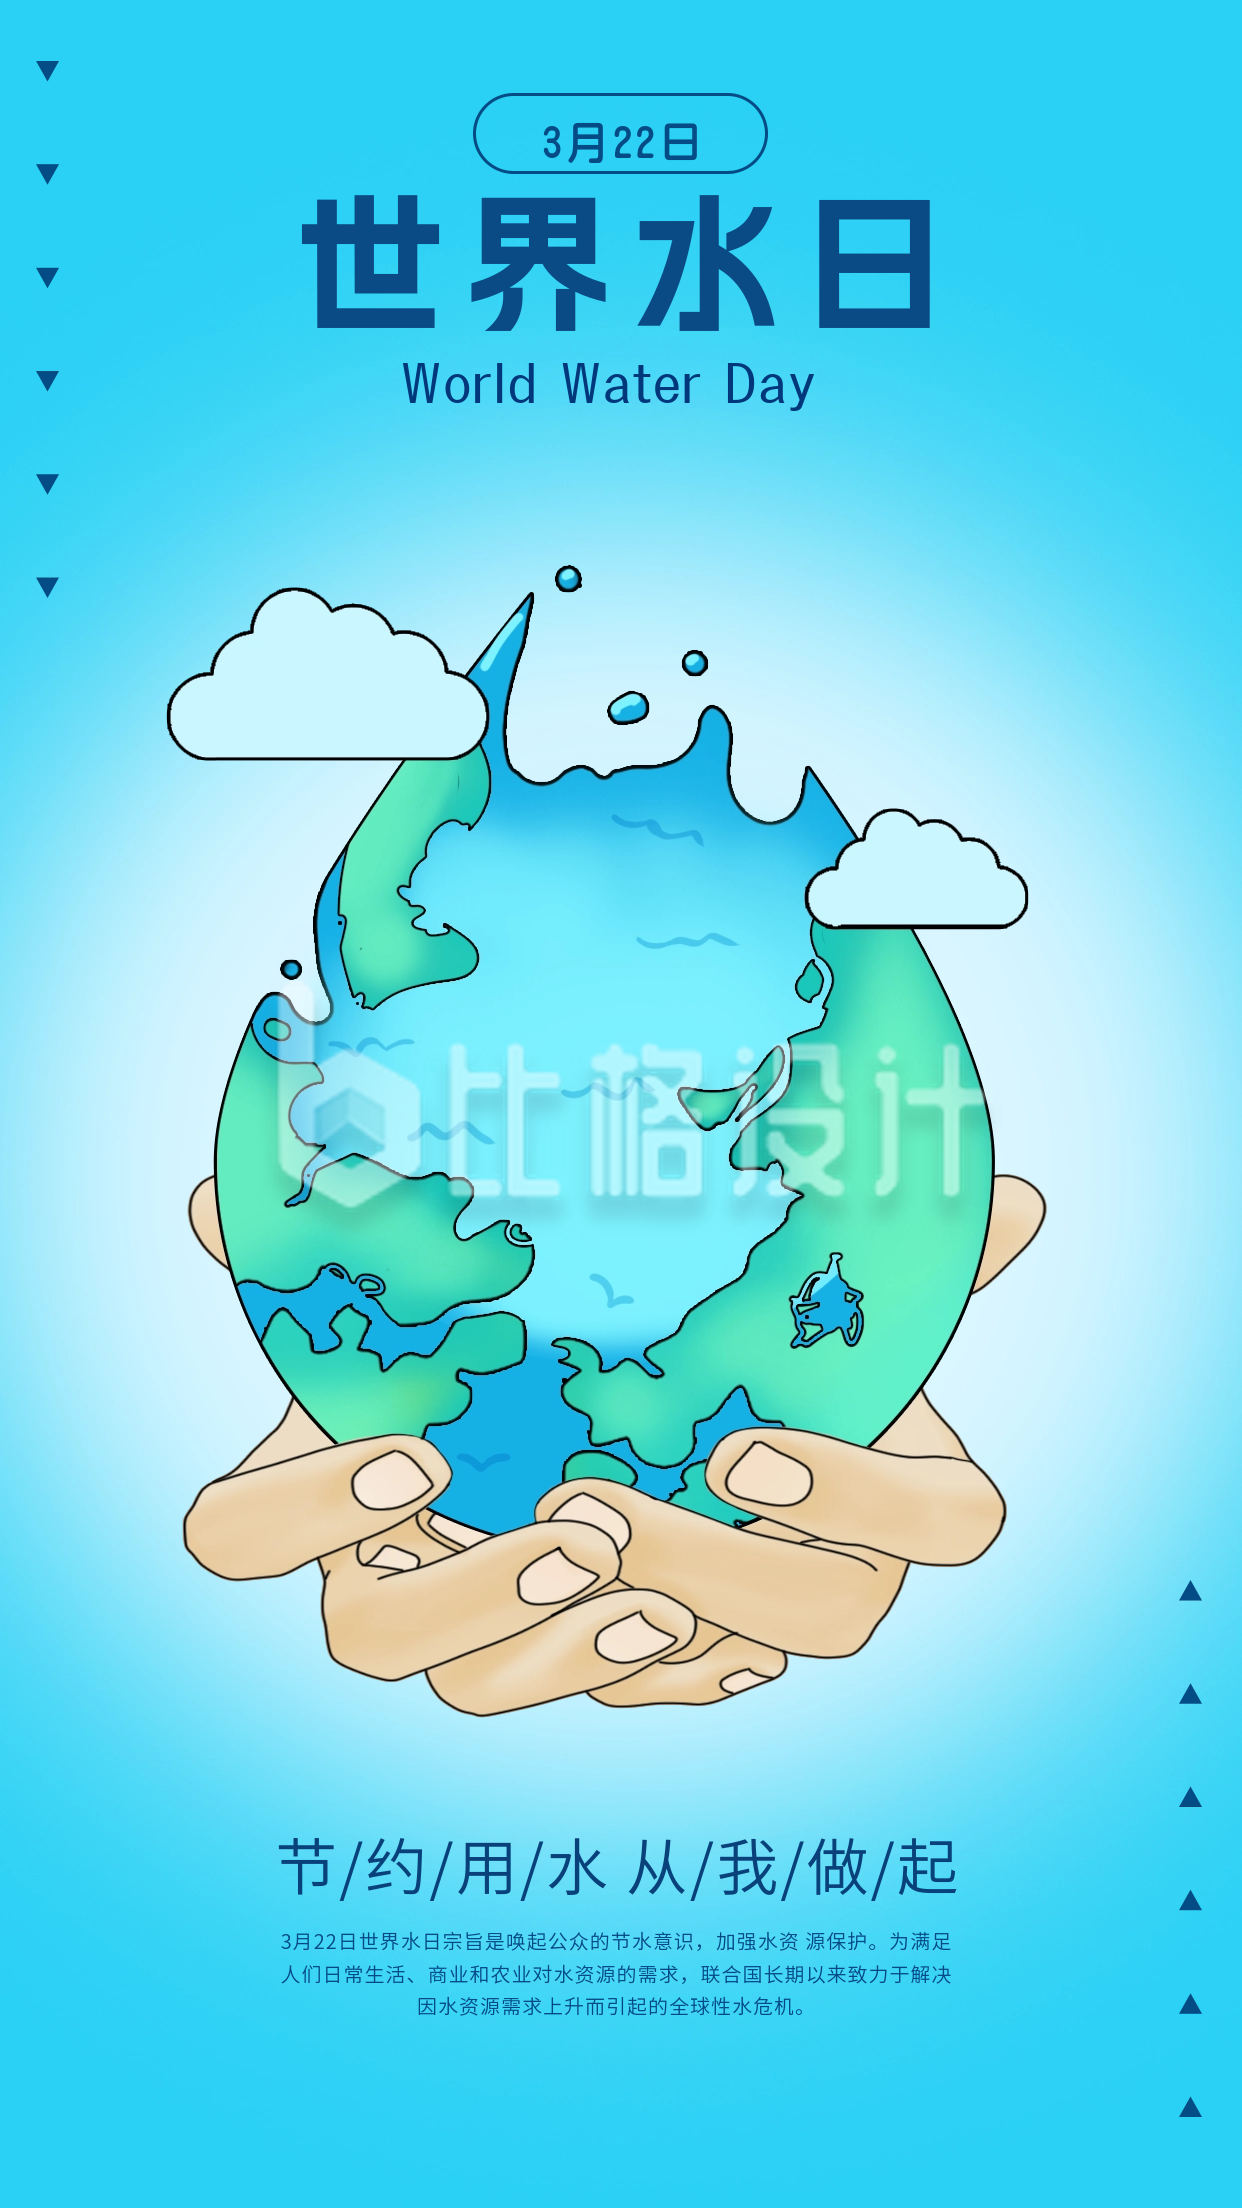 世界水日手绘宣传海报